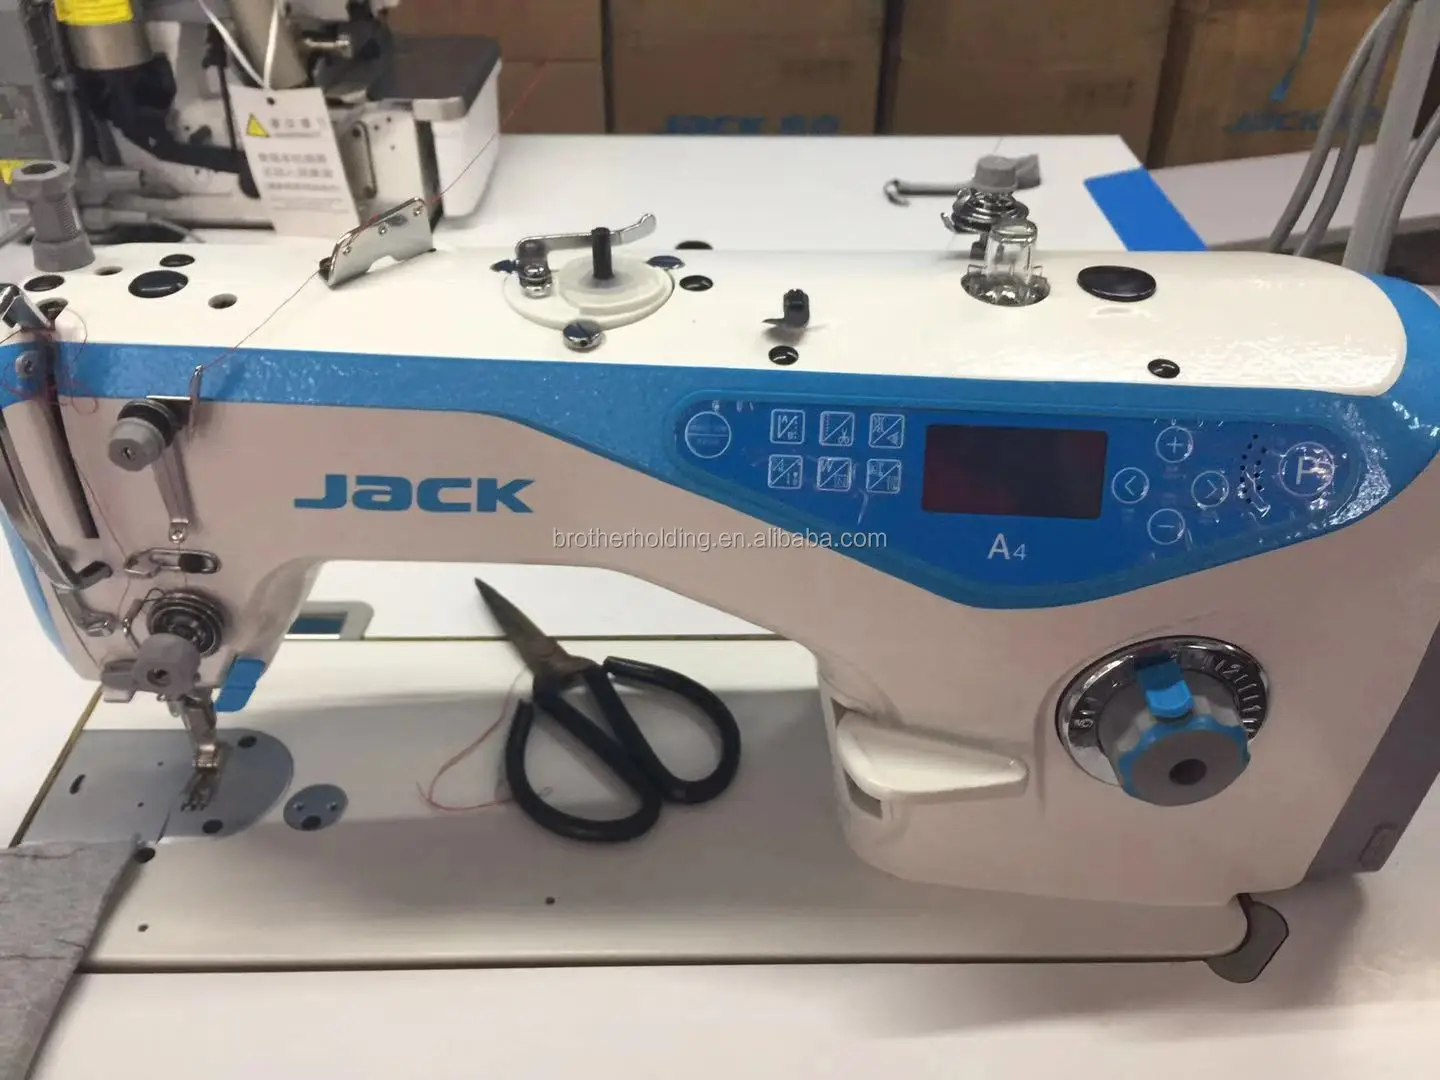 buy 杰克自动缝纫机 jack a4 缝纫机,缝纫机杰克 a4 product on